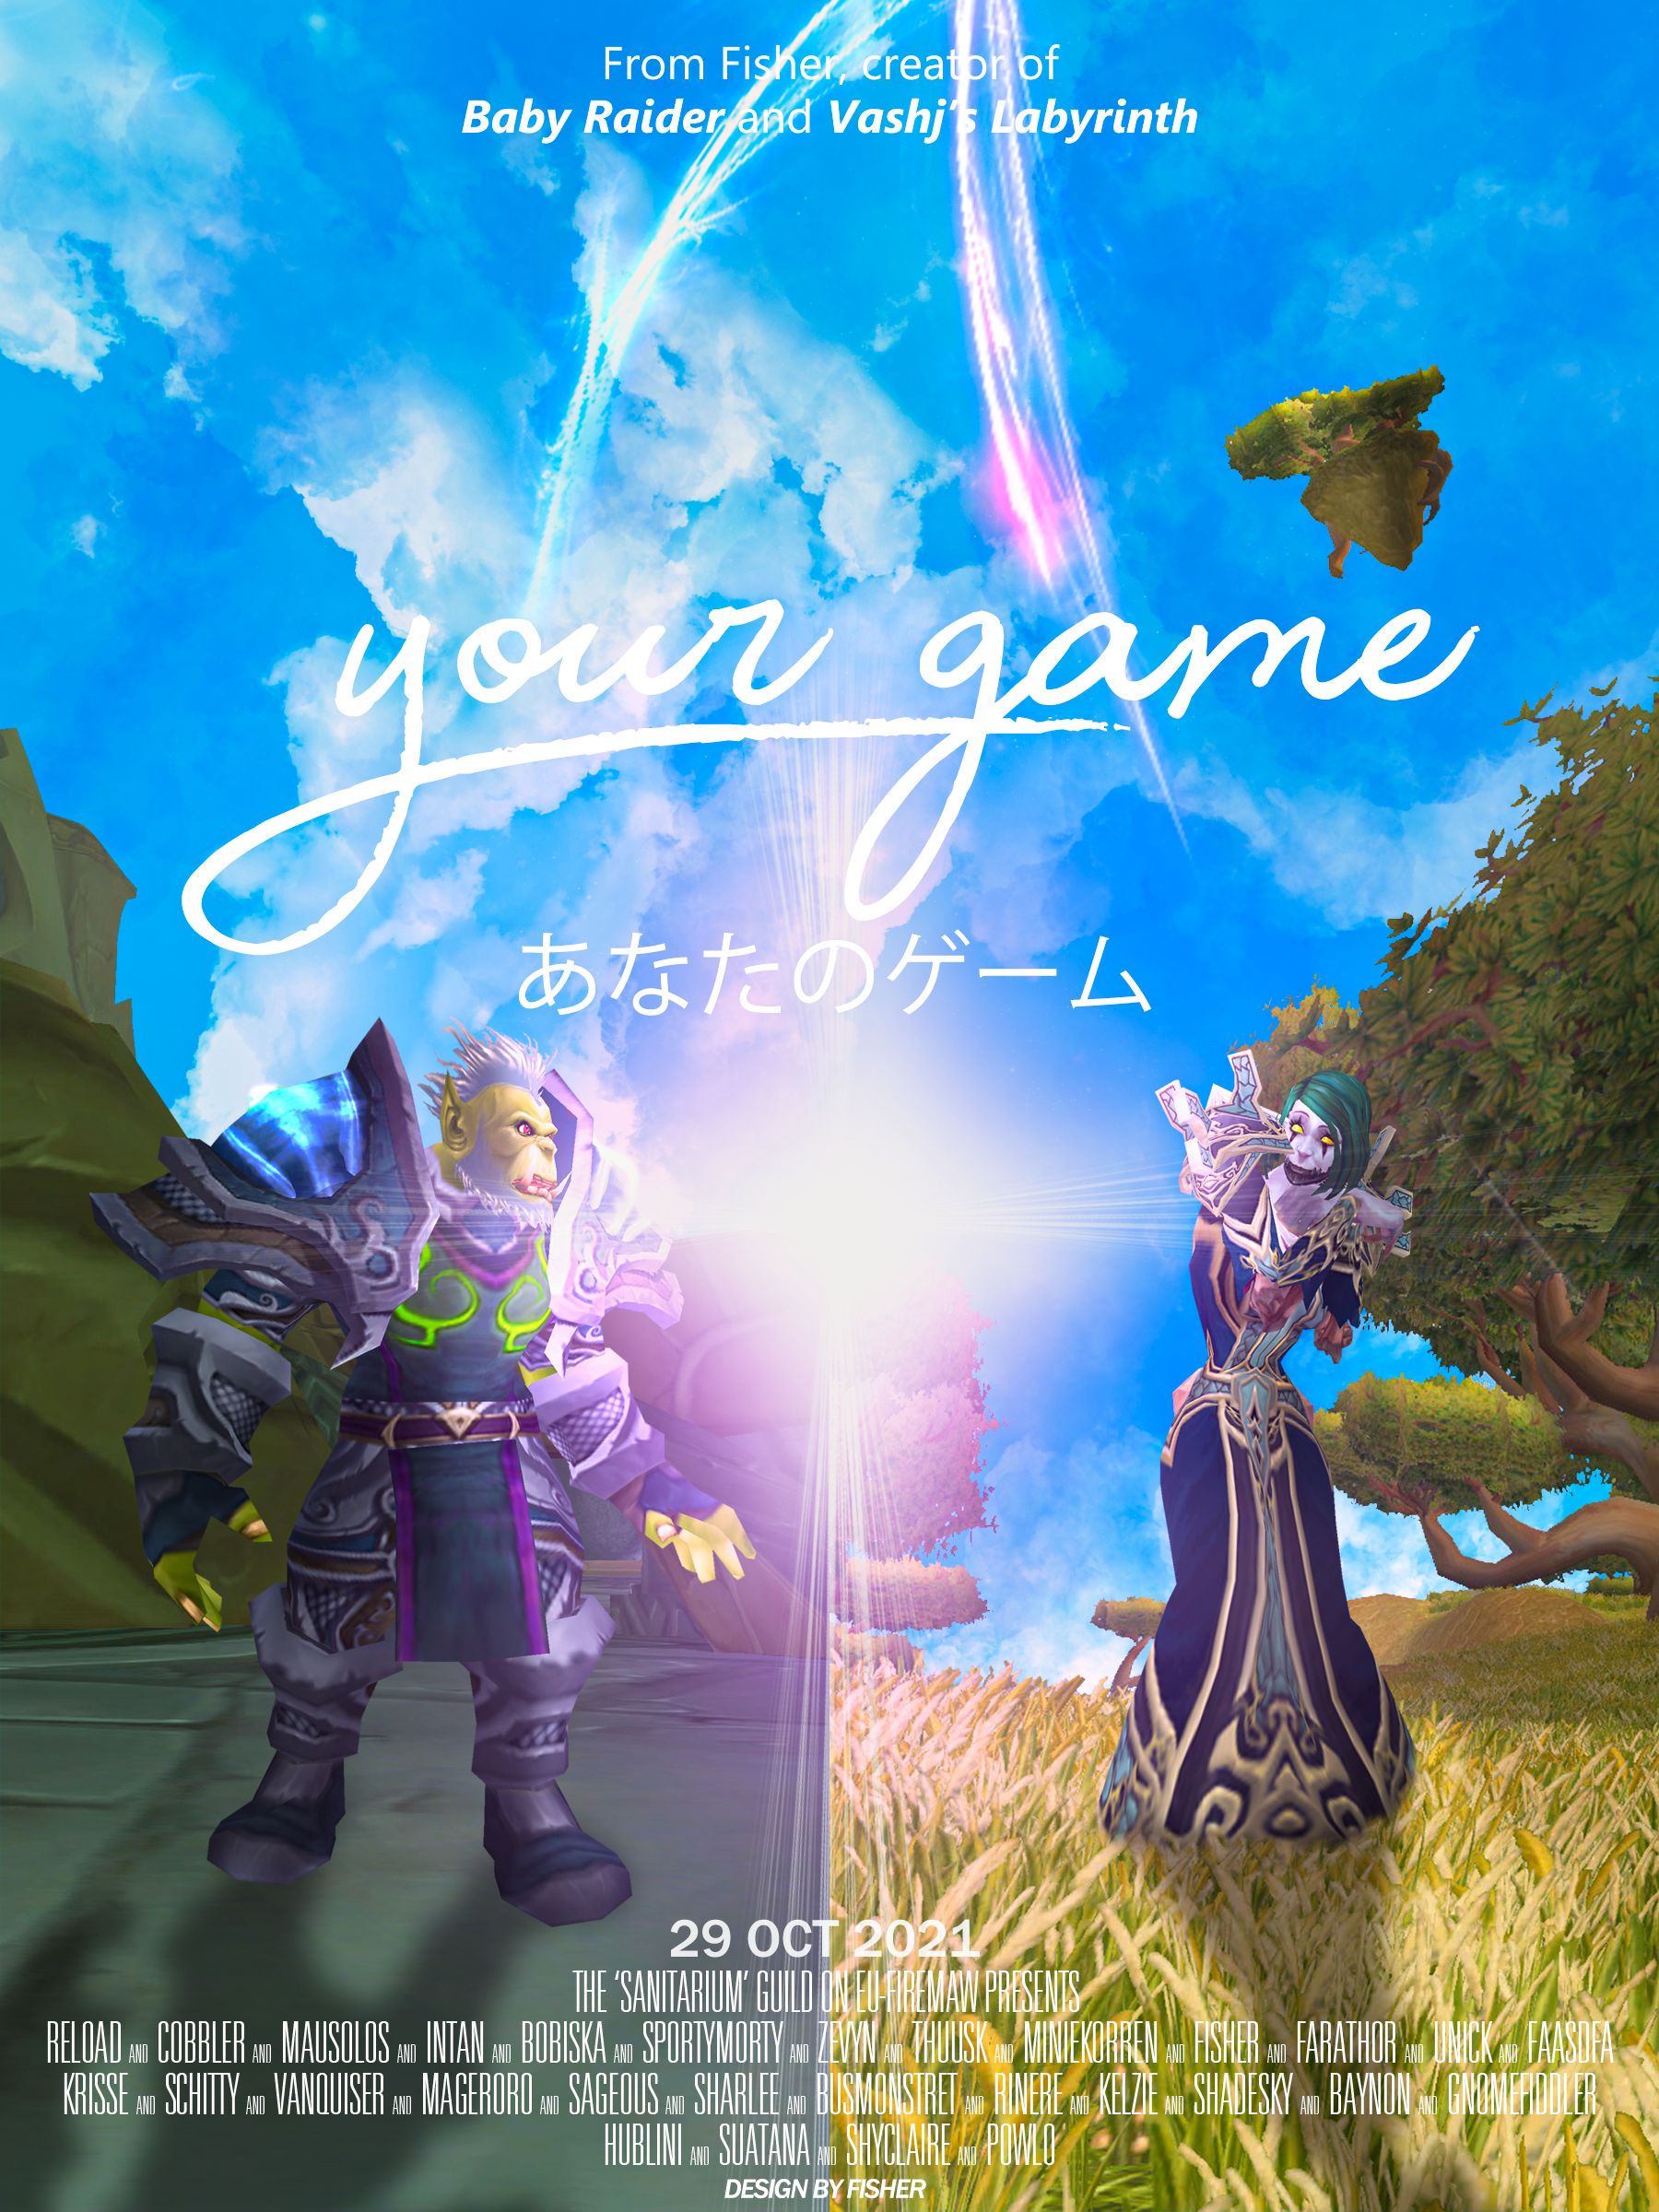 Пародия на постер фильма в World of Warcraft. &laquo;Твоё имя&raquo; / Your Name (2016). Источник: reddit